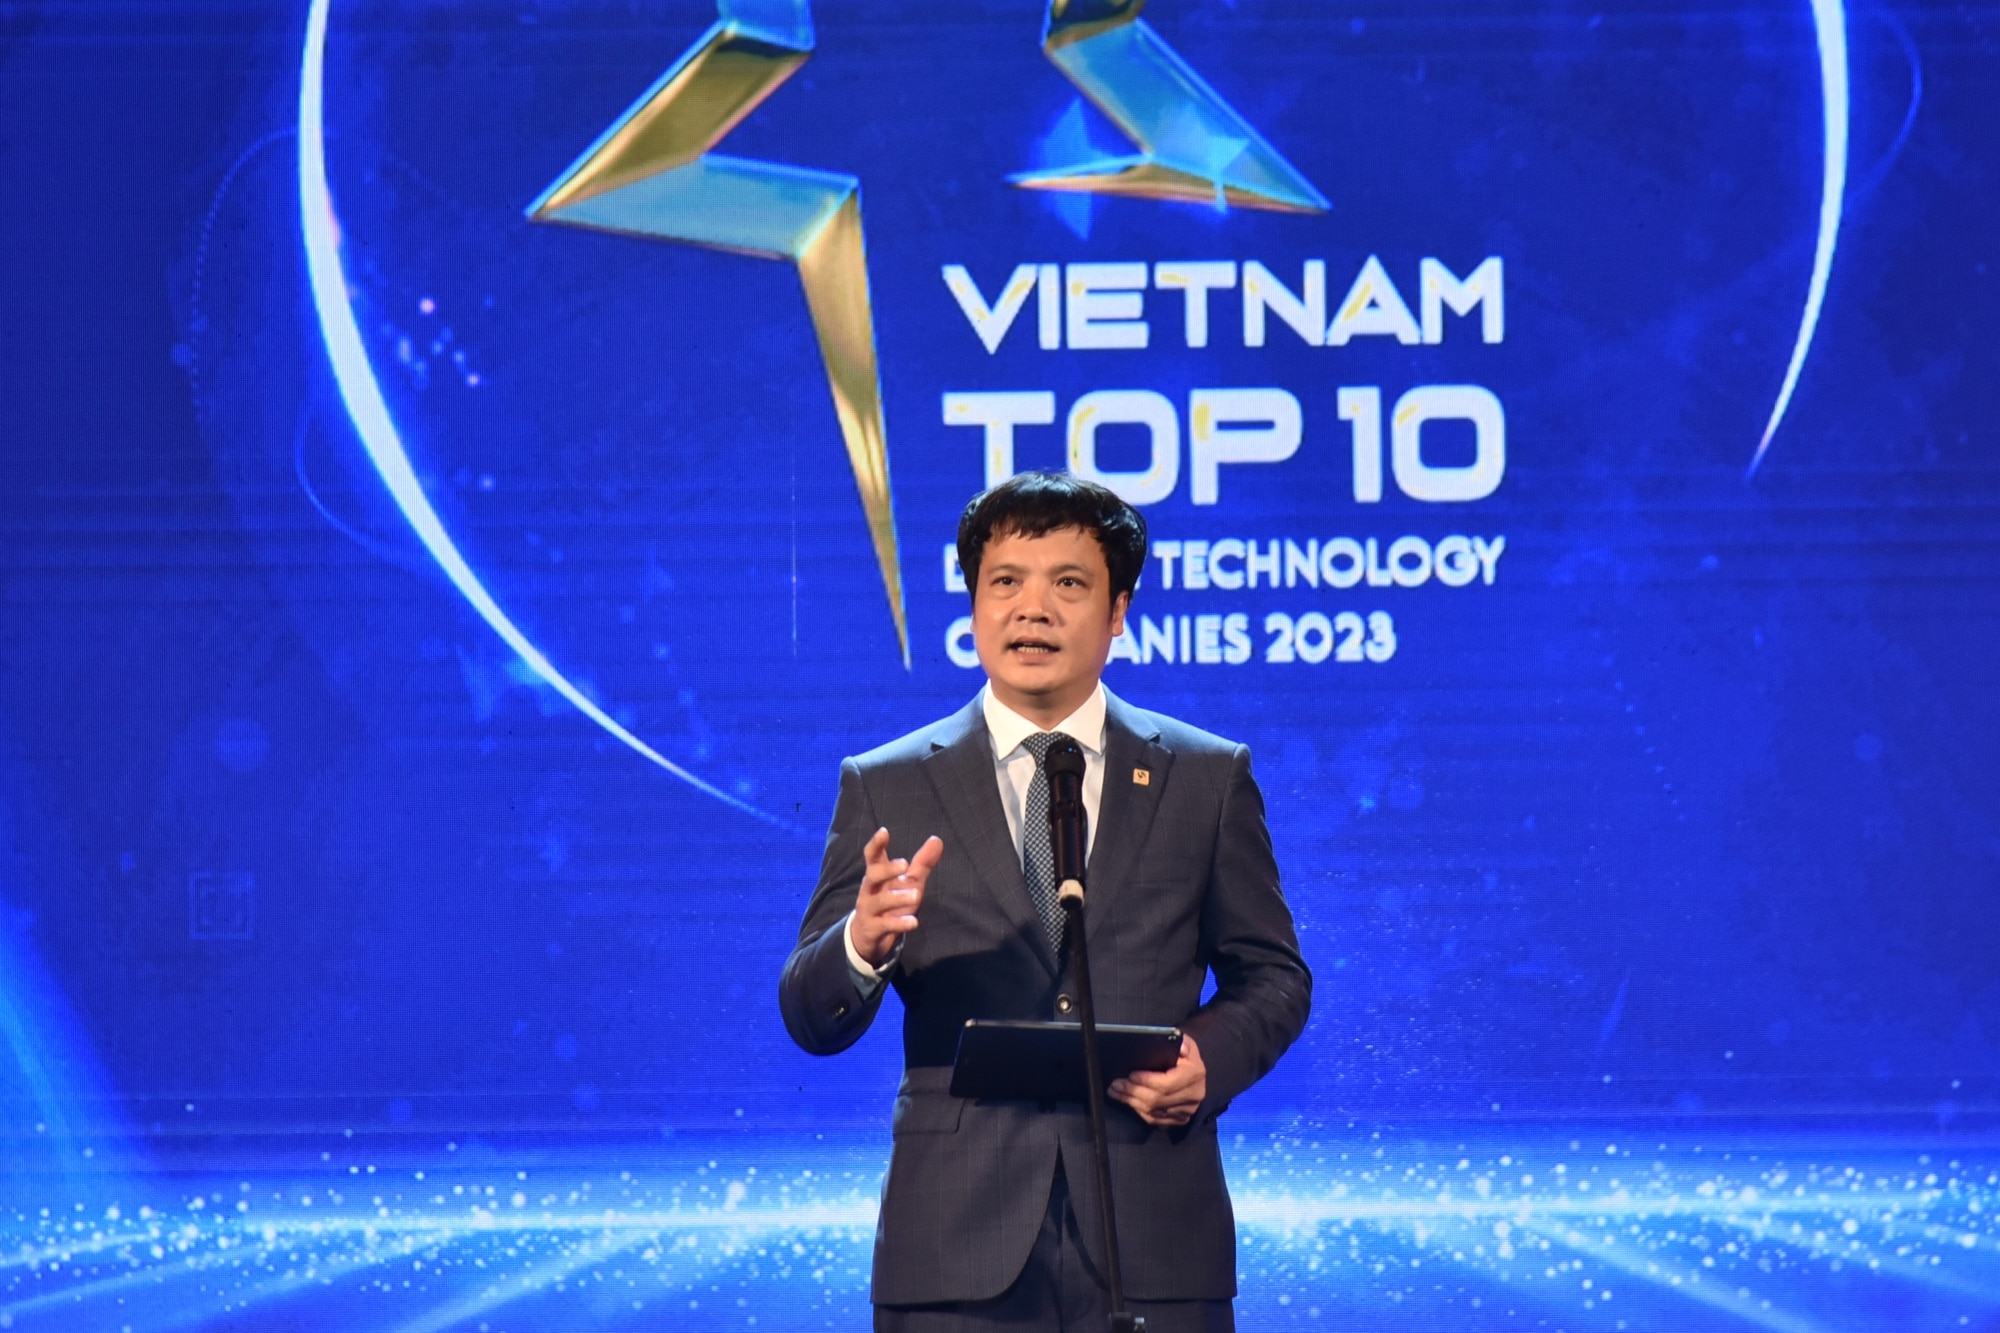 Ông Nguyễn Văn Khoa cho biết đã chứng kiến rất nhiều câu chuyện truyền cảm hứng về chuyển đổi số từ những doanh nghiệp công nghệ trong nước